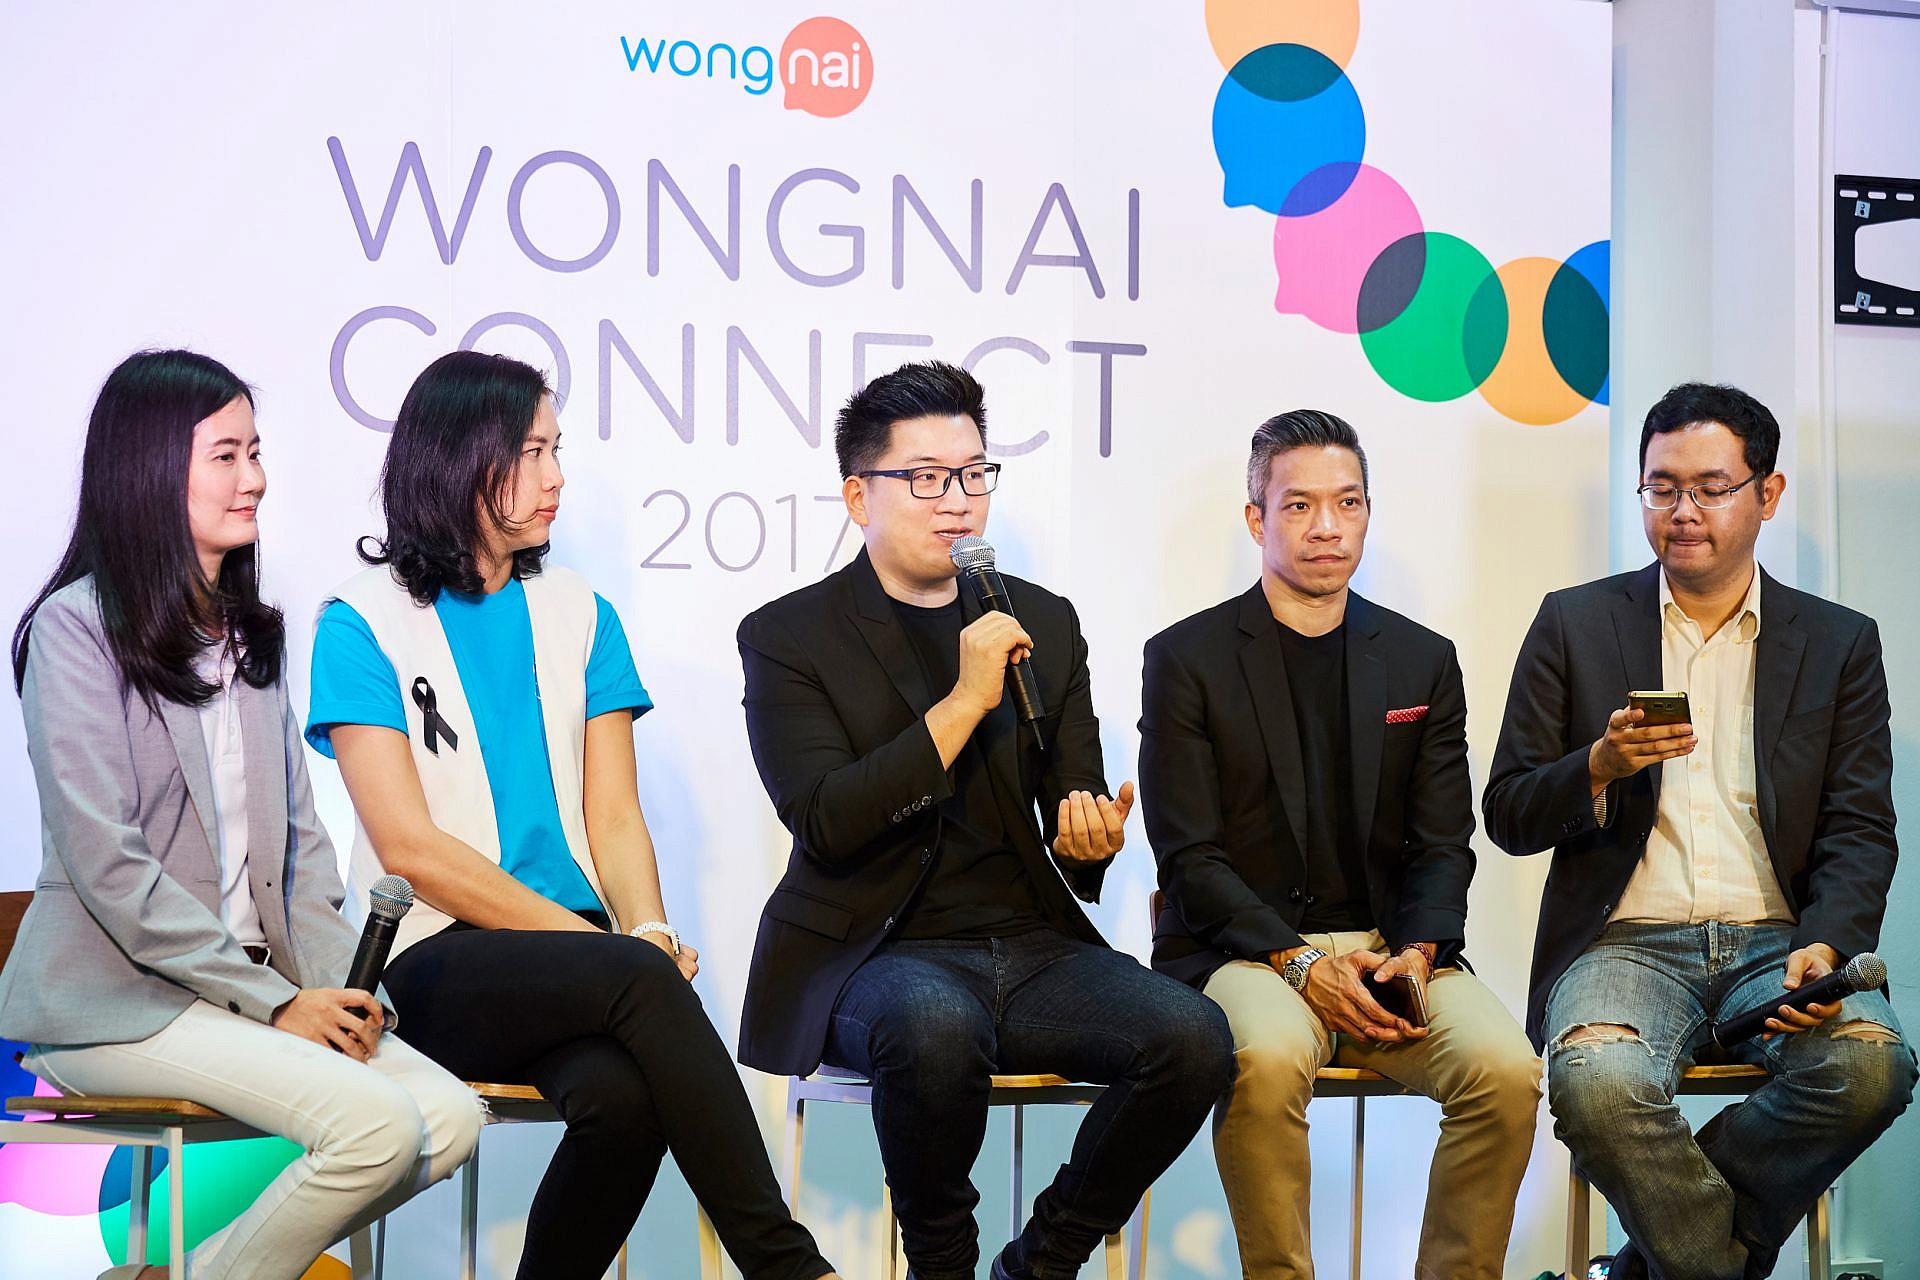 Wongnai Connect เผย 3 บริการใหม่พร้อมก้าวสู่ Lifestyle Platform เต็มรูปแบบ